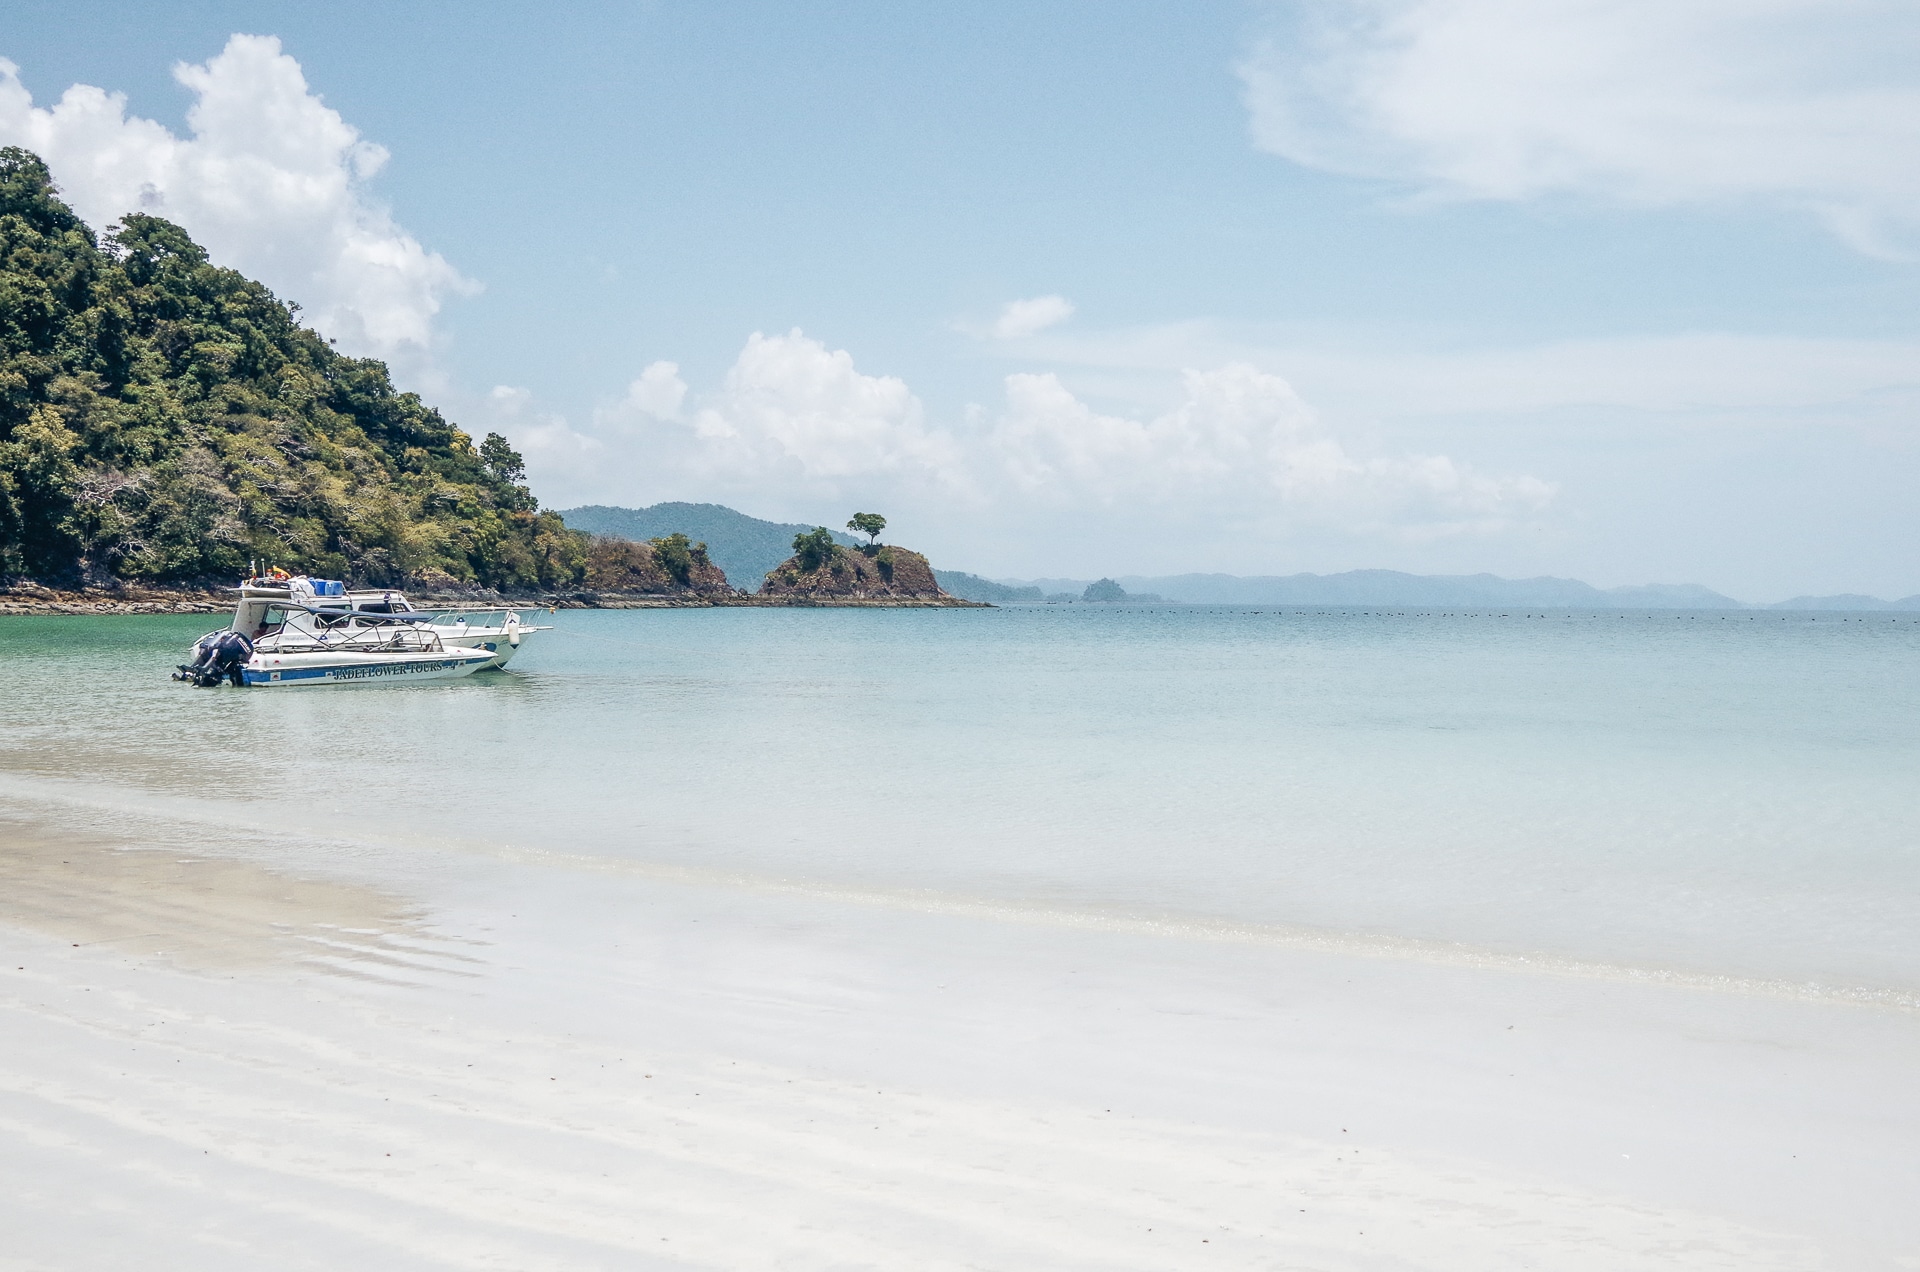 bateau amarré sur la plage aux eaux cristallines de l'île de two face dans l'archipel des Mergui